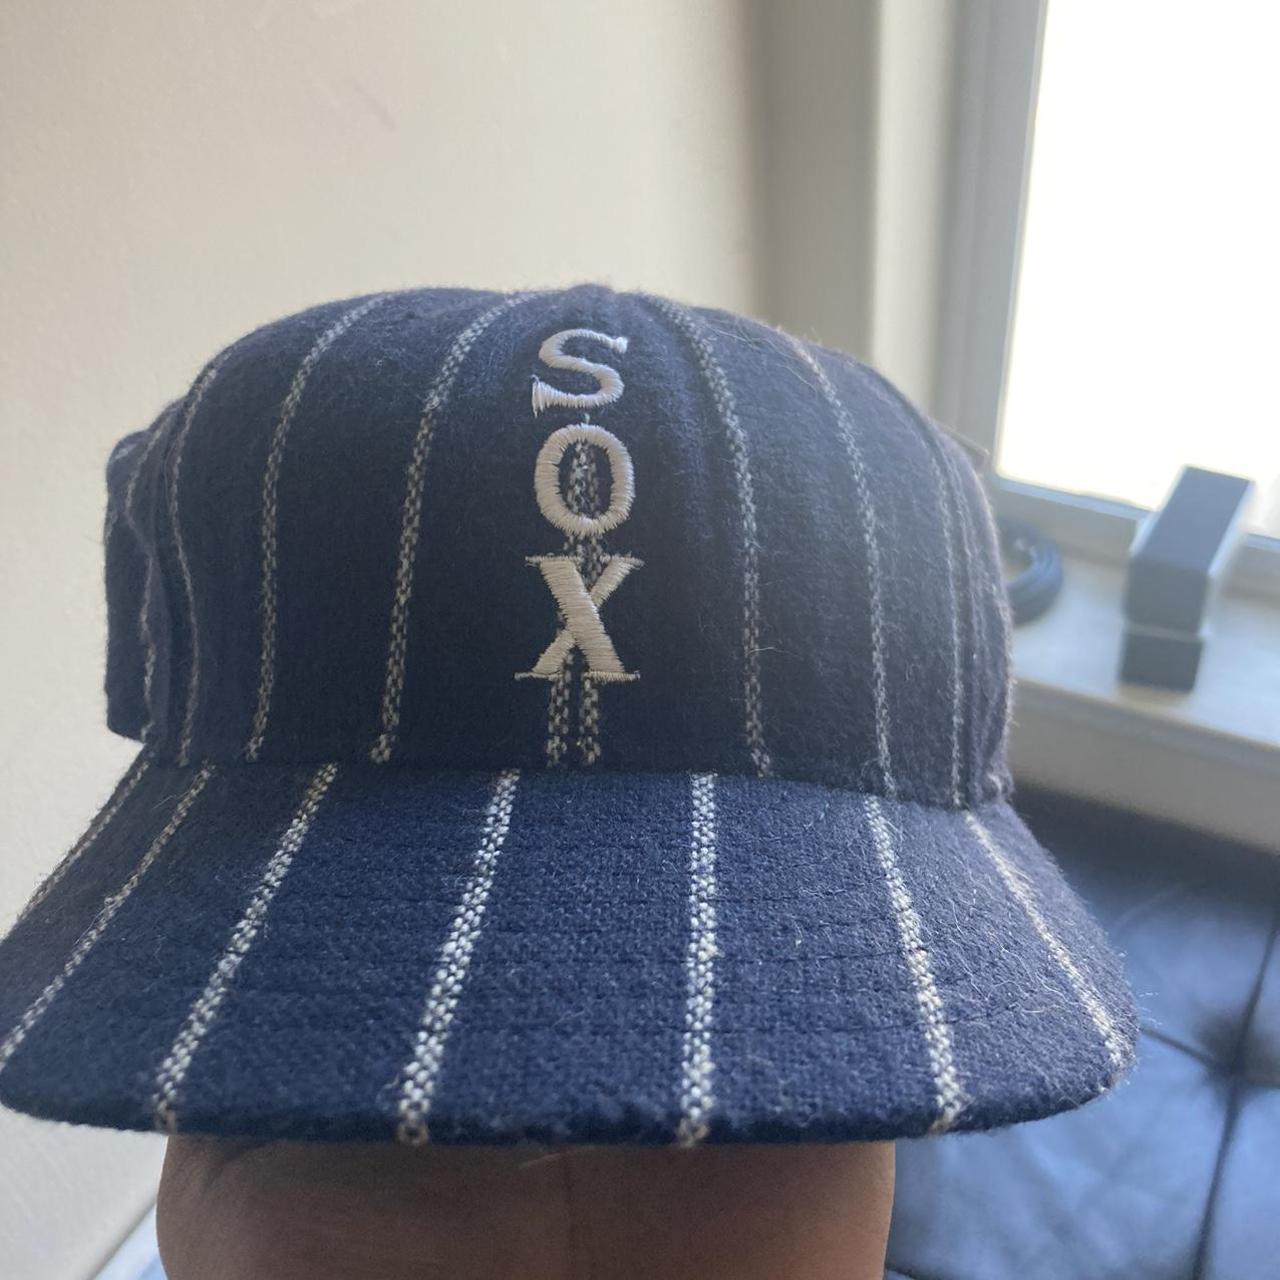 Chicago White Sox Vintage cap size 7. Don't wear - Depop